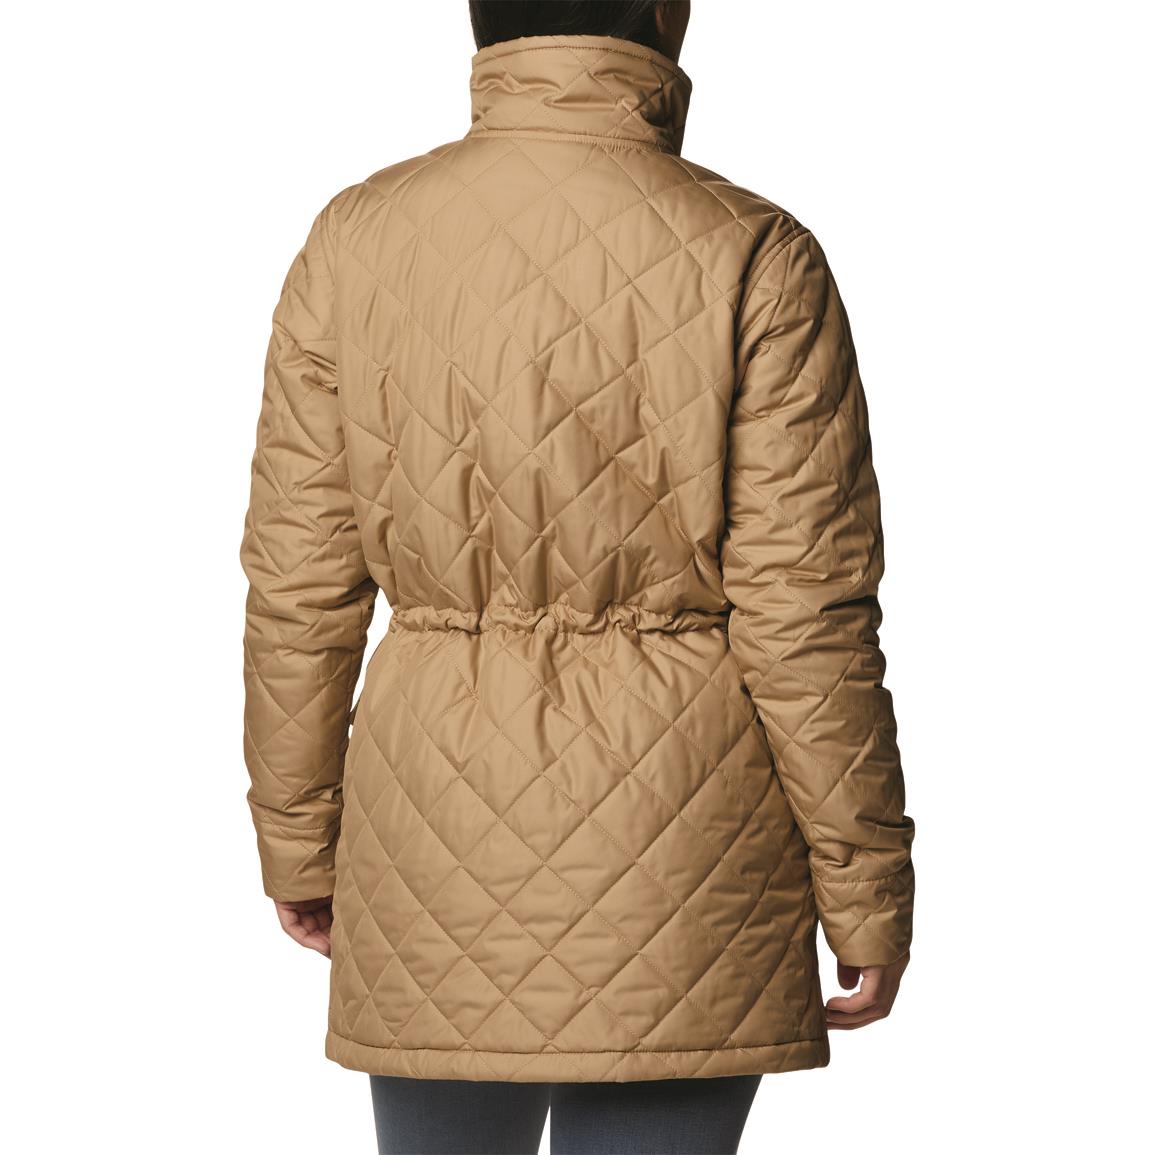 Eskimo Women's Keeper Insulated Waterproof Jacket - 712692, Jackets, Coats  & Rain Gear at Sportsman's Guide